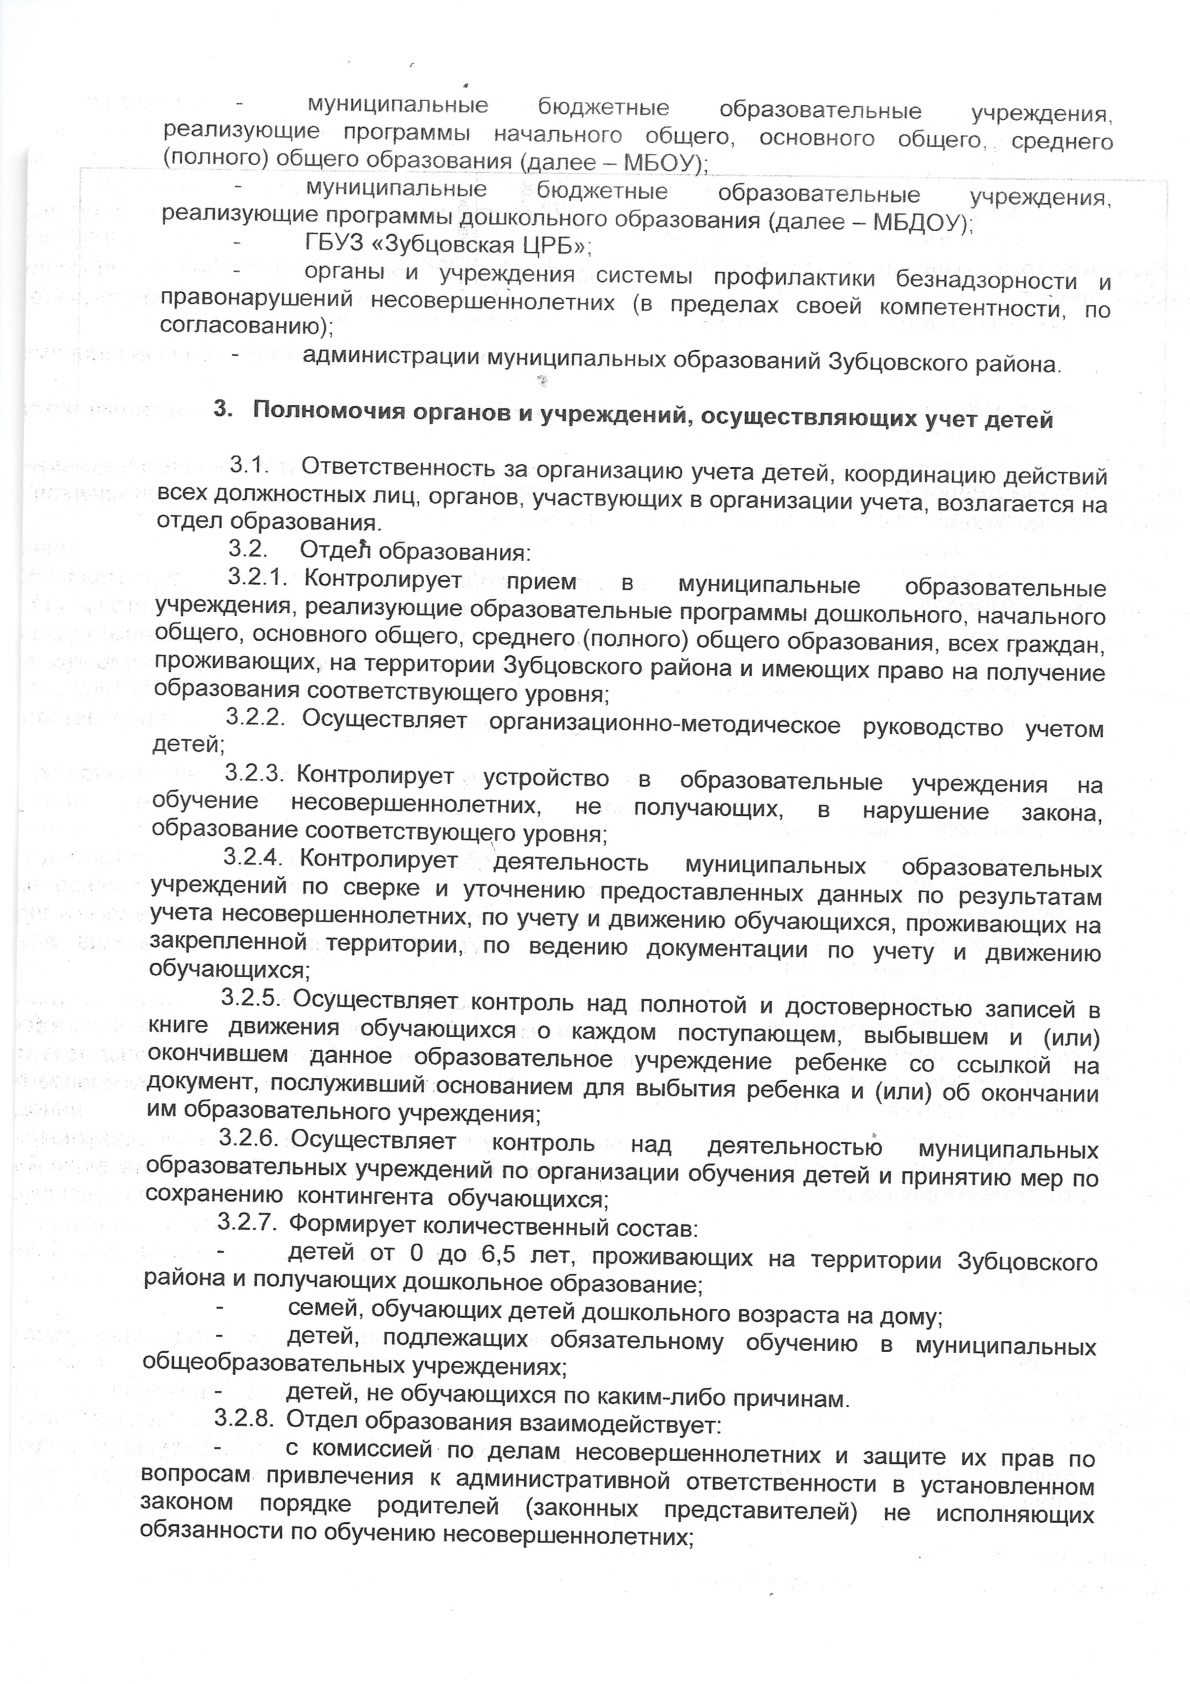 Постановление 22 от 22.10.2019 об организации учета детей 3